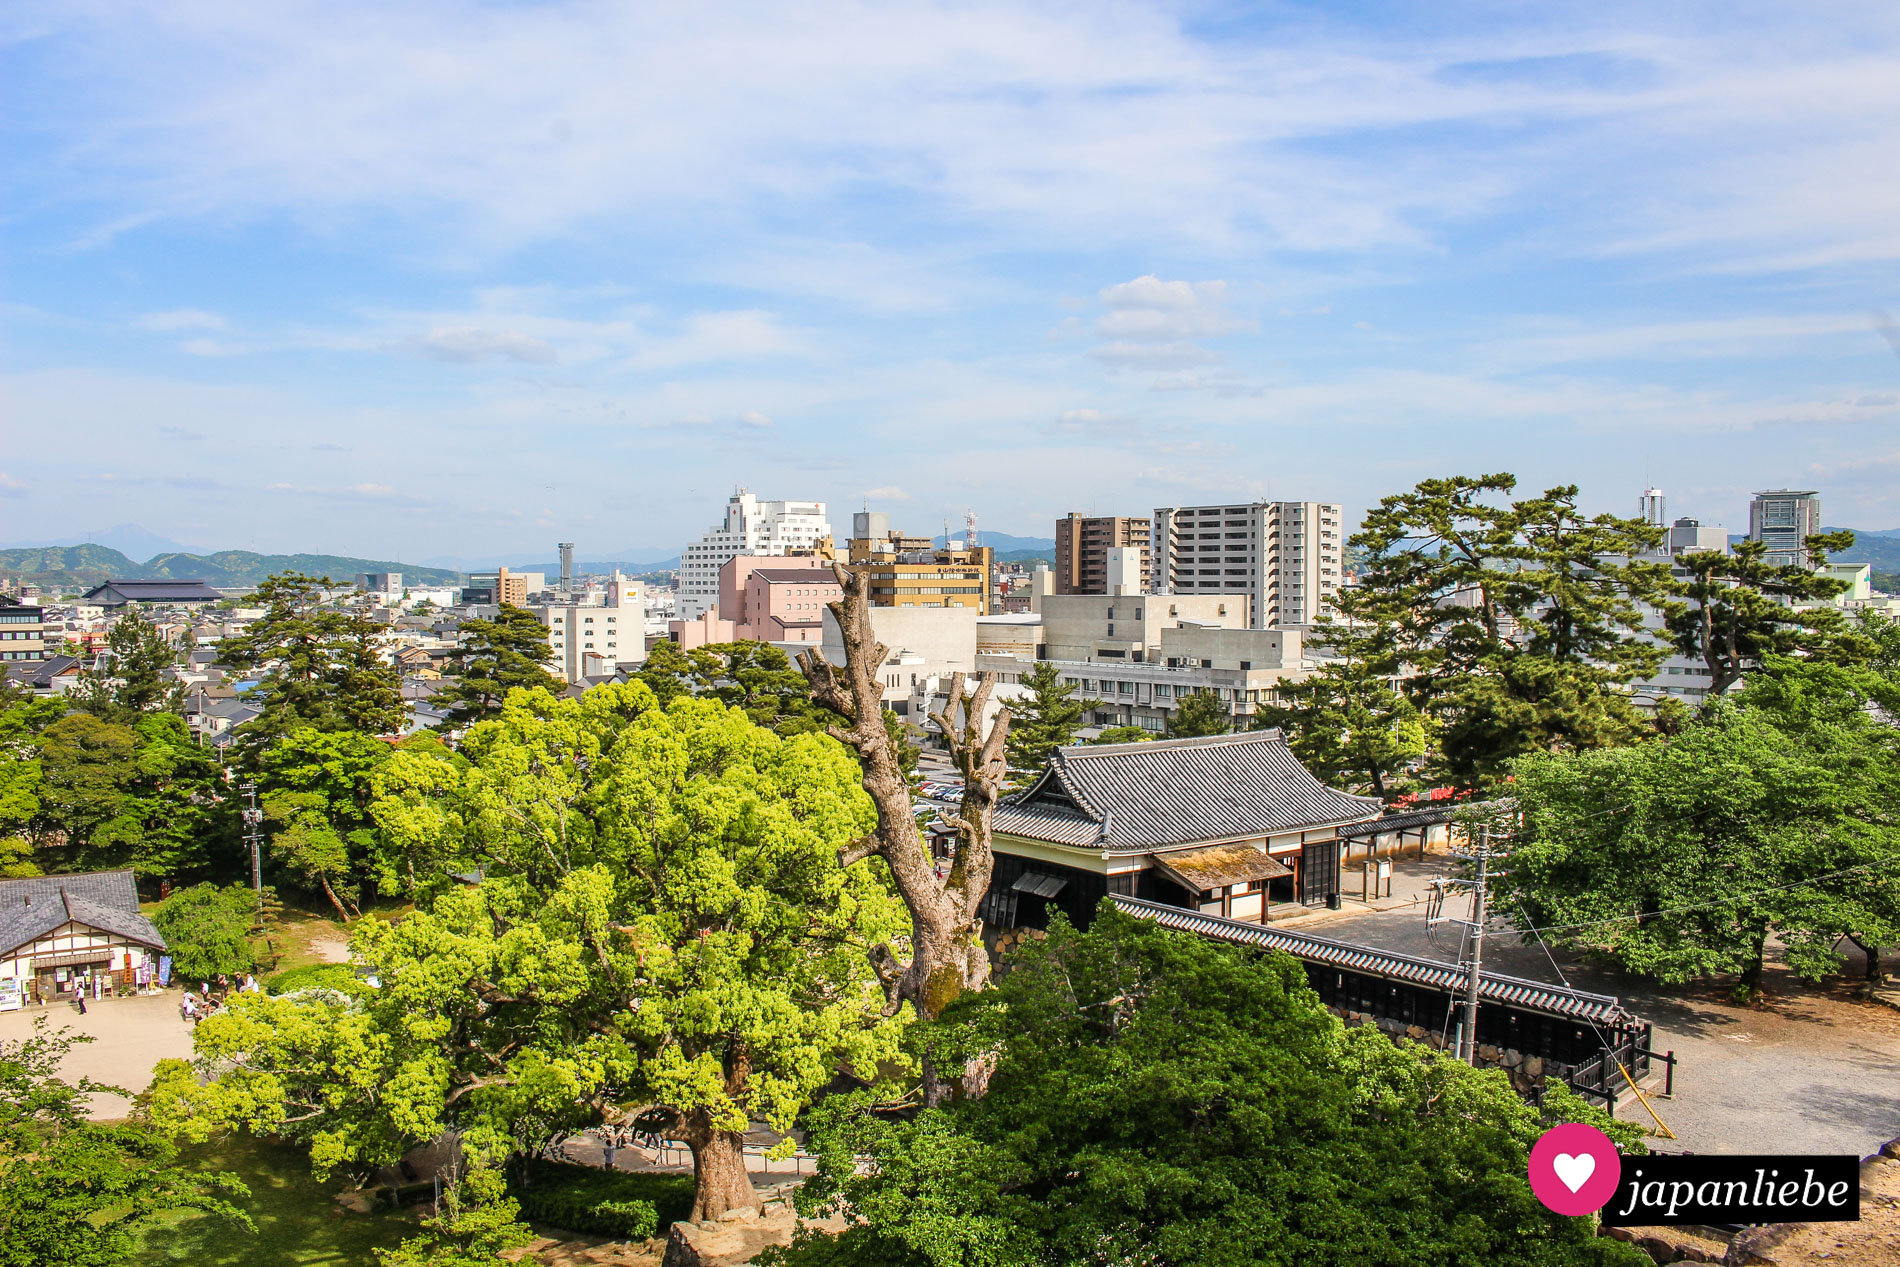 Blick von der Burg über die Stadt Matsue.